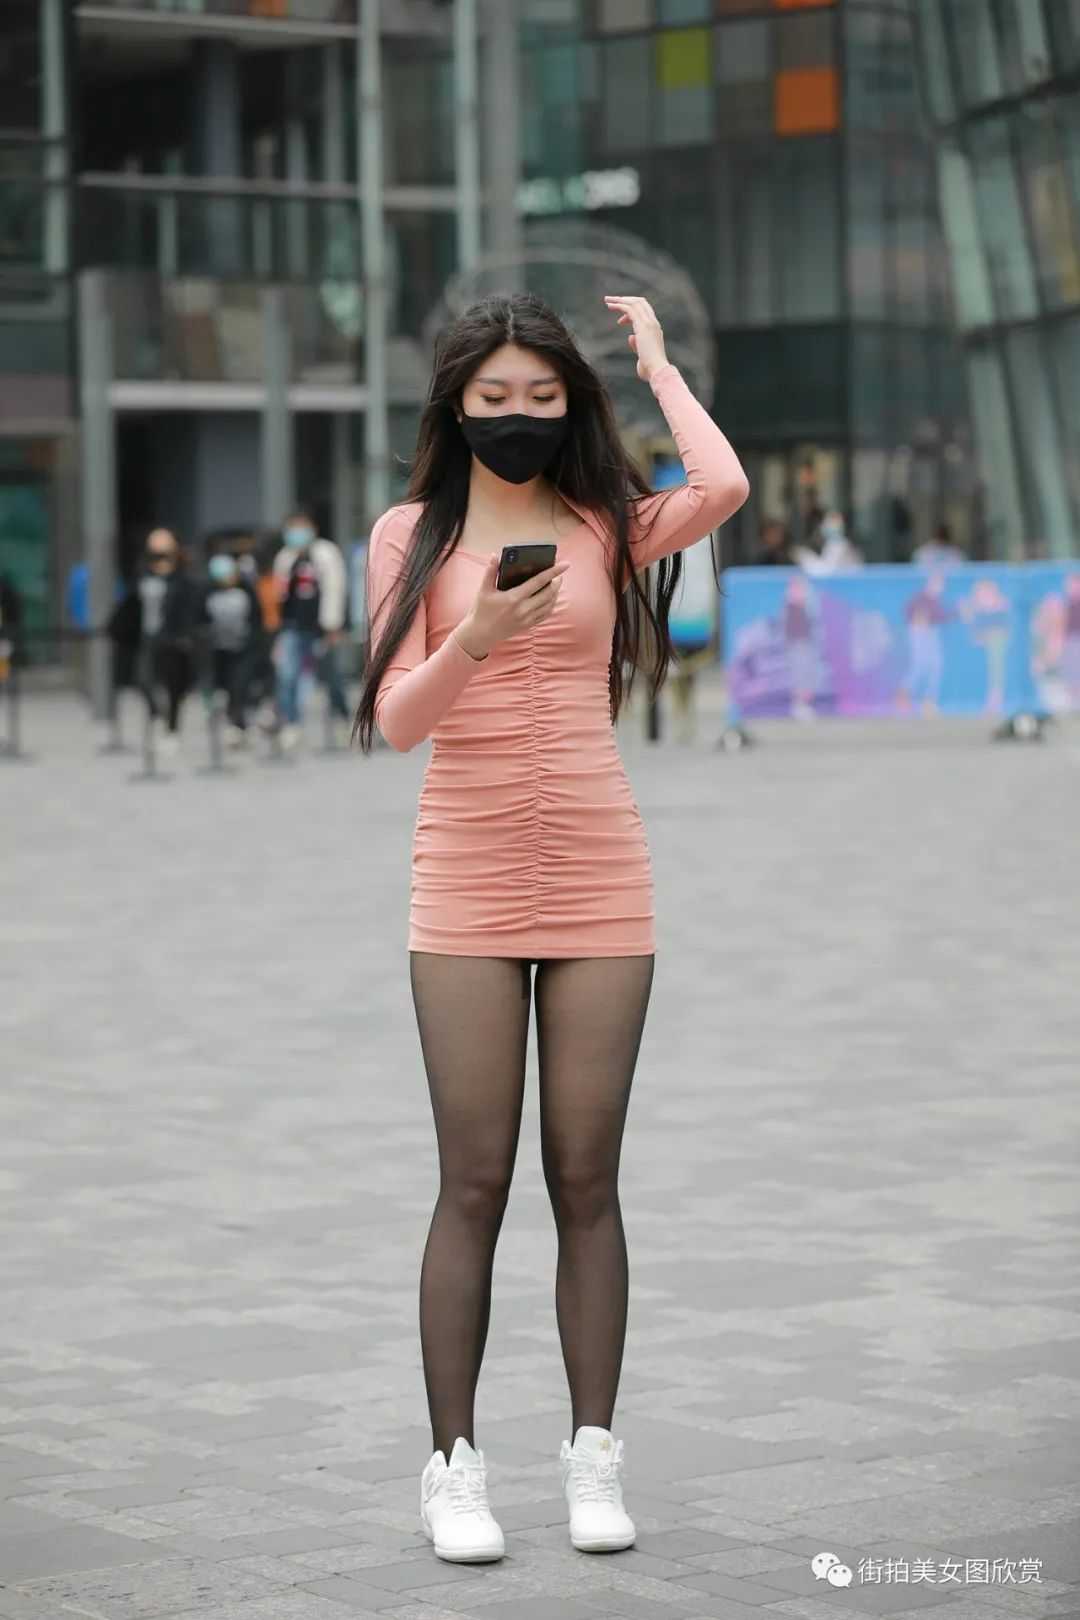 风吹过粉色连衣裙美女露出半个屁股，丝袜包裹的光滑臀部_中国街拍-真实街拍第一站